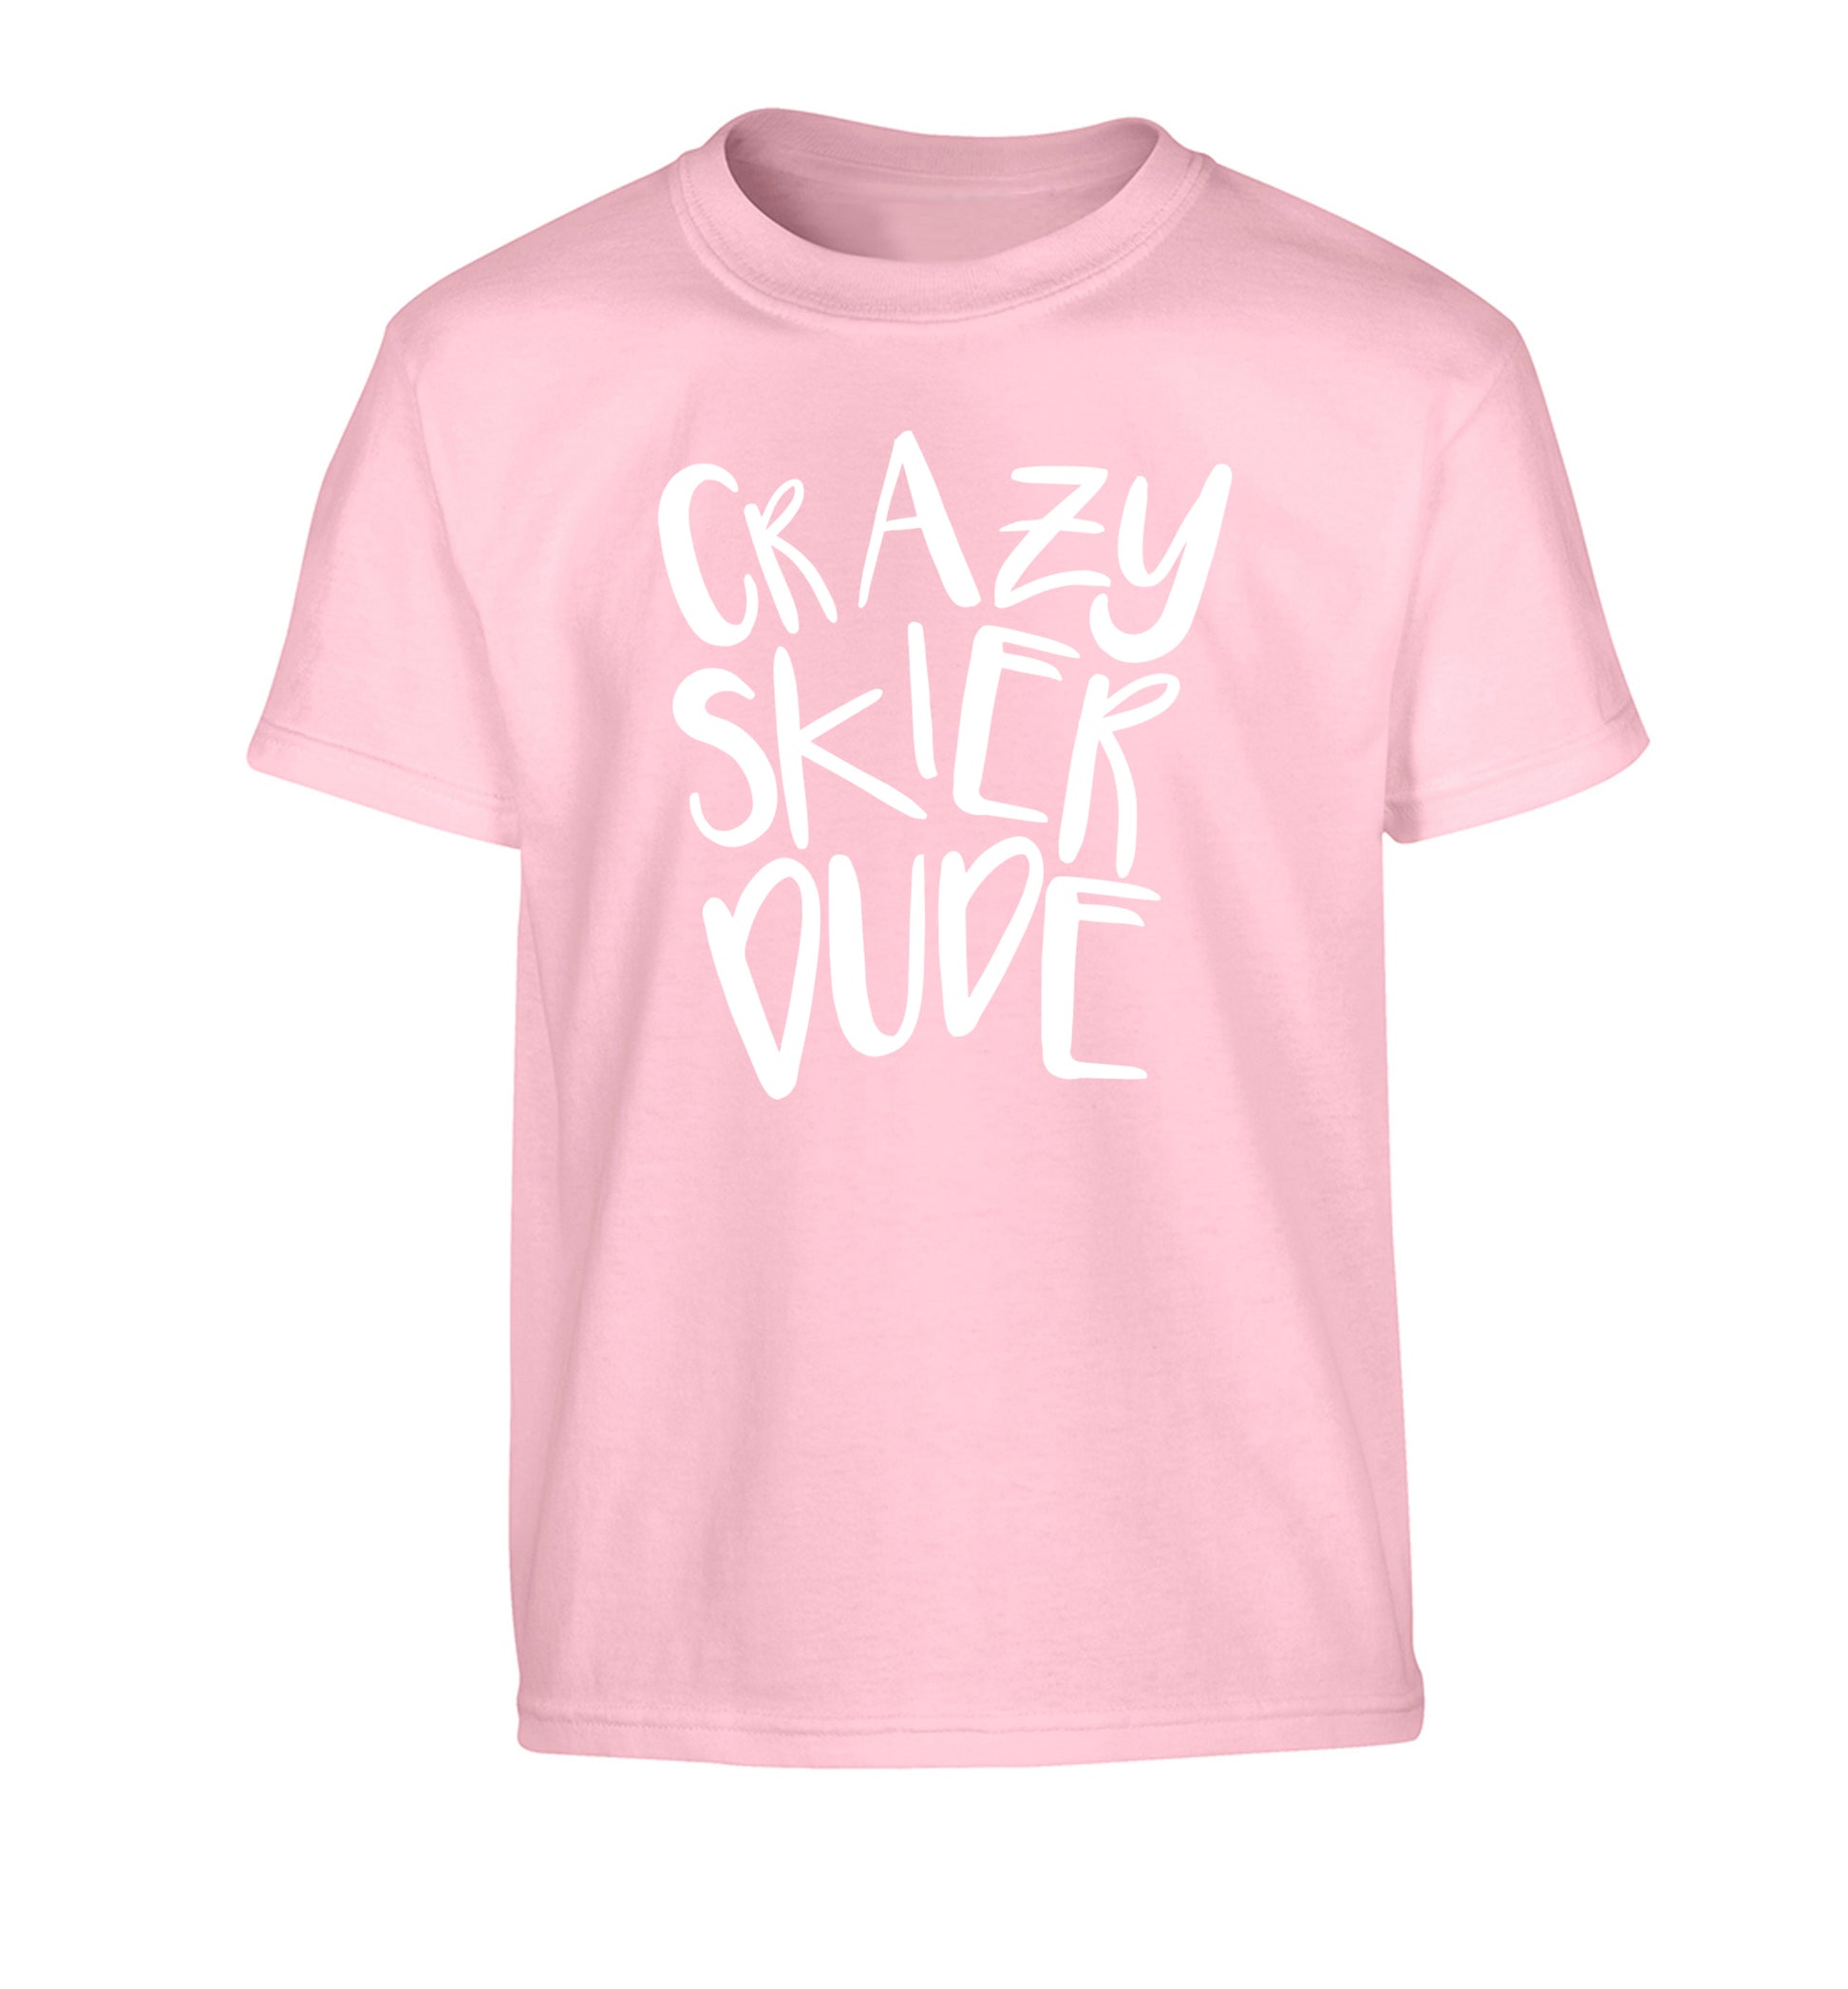 Crazy skier dude Children's light pink Tshirt 12-14 Years